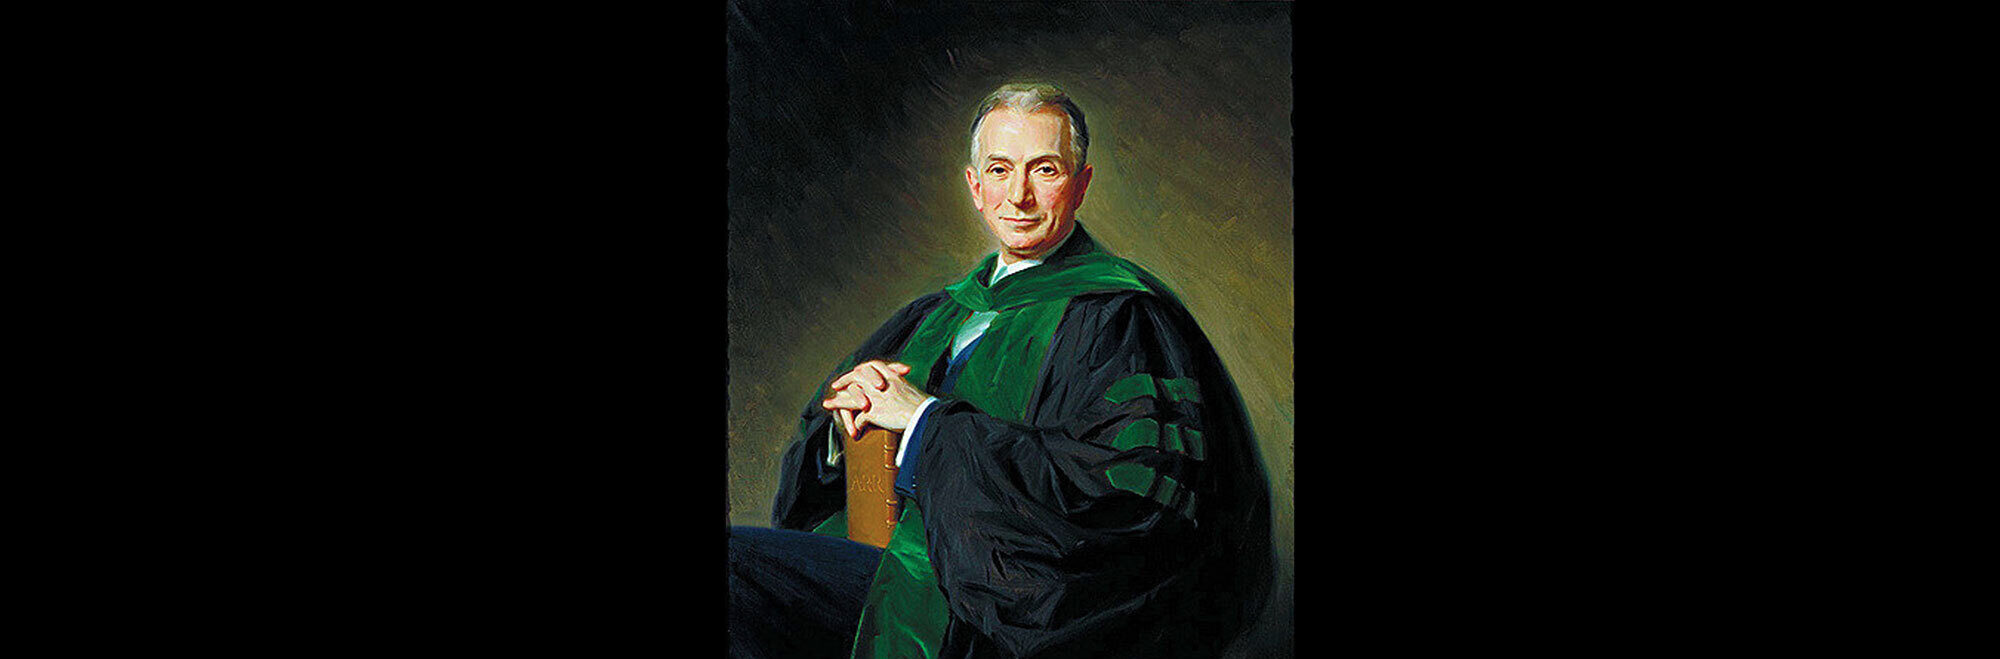 Arnold R. Rich portrait (Johns Hopkins Chesney Archives)